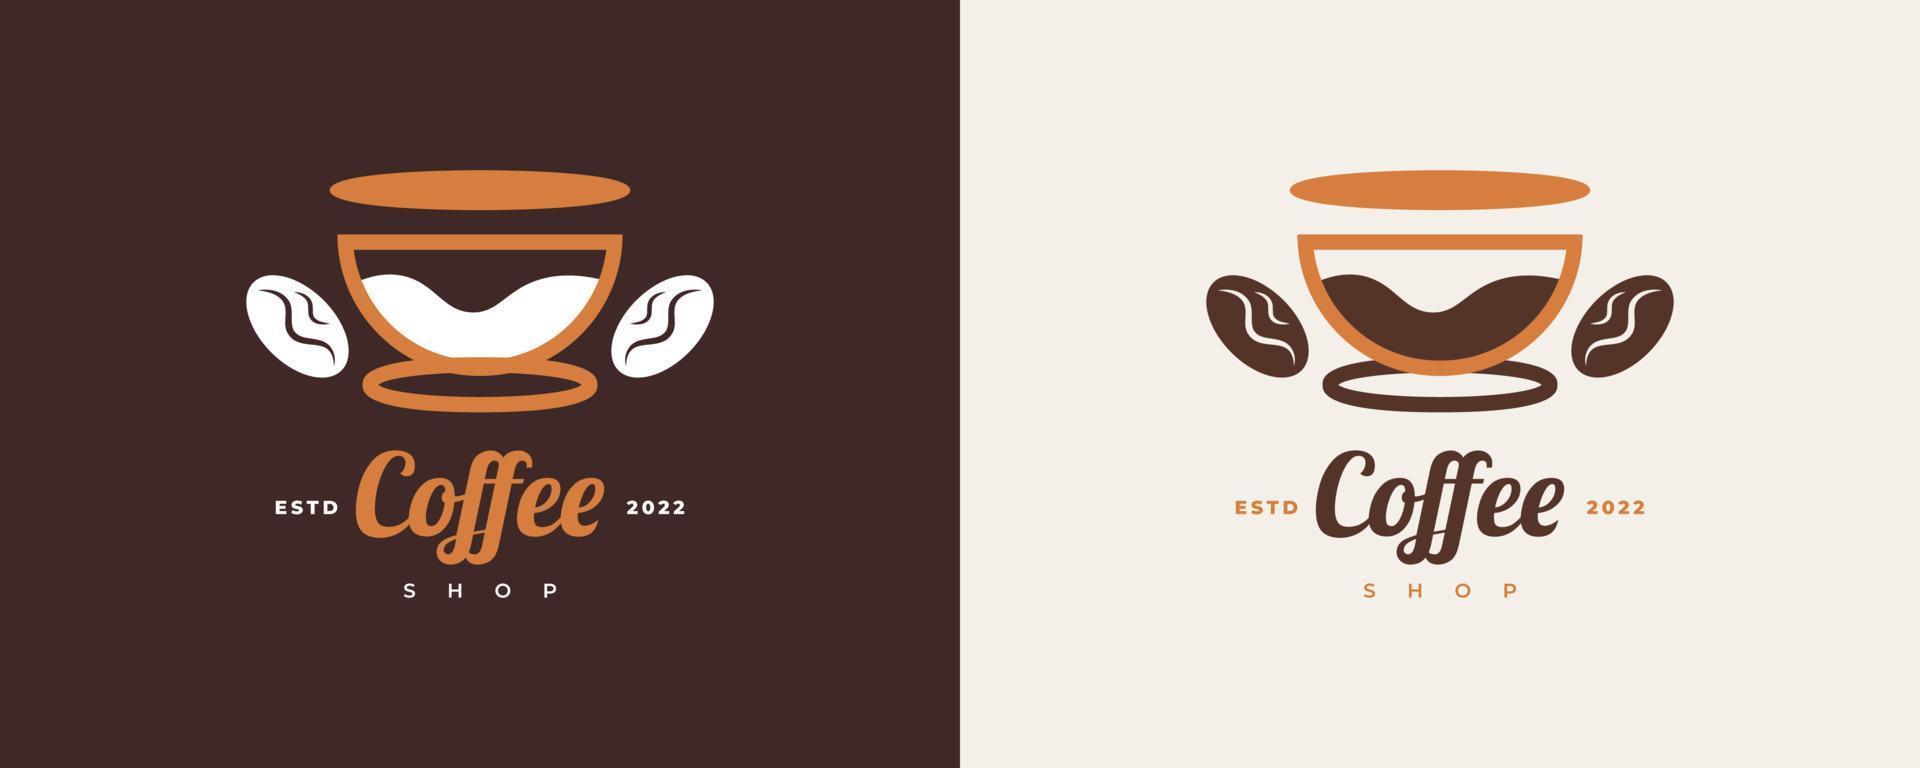 logotipo de cafeteria vintage e minimalista. logotipo ou emblema do café com estilo retrô vetor